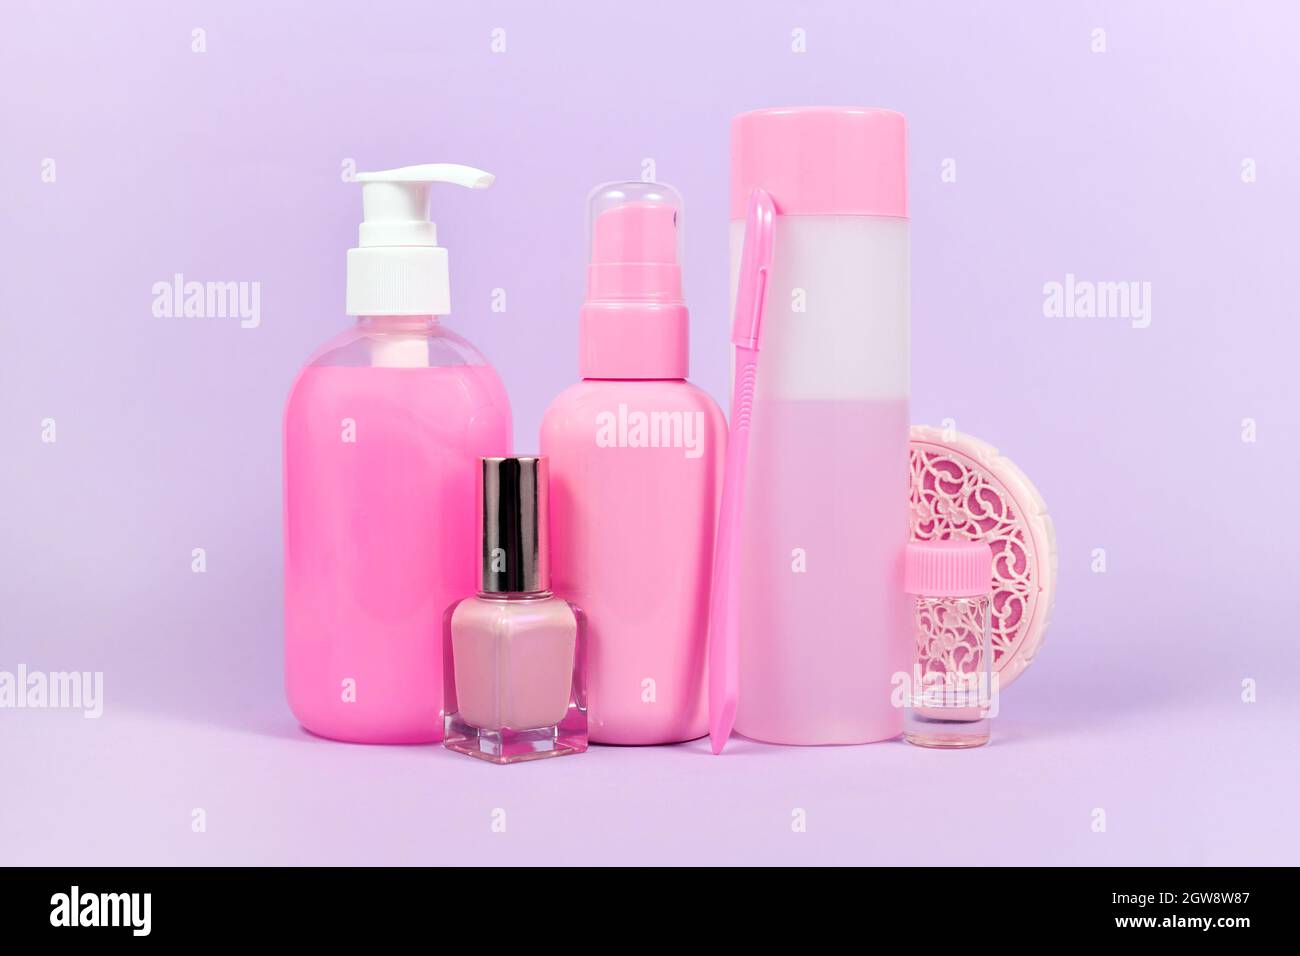 Divers produits d'hygiène de couleur rose stéréotype commercialisés aux femmes Banque D'Images